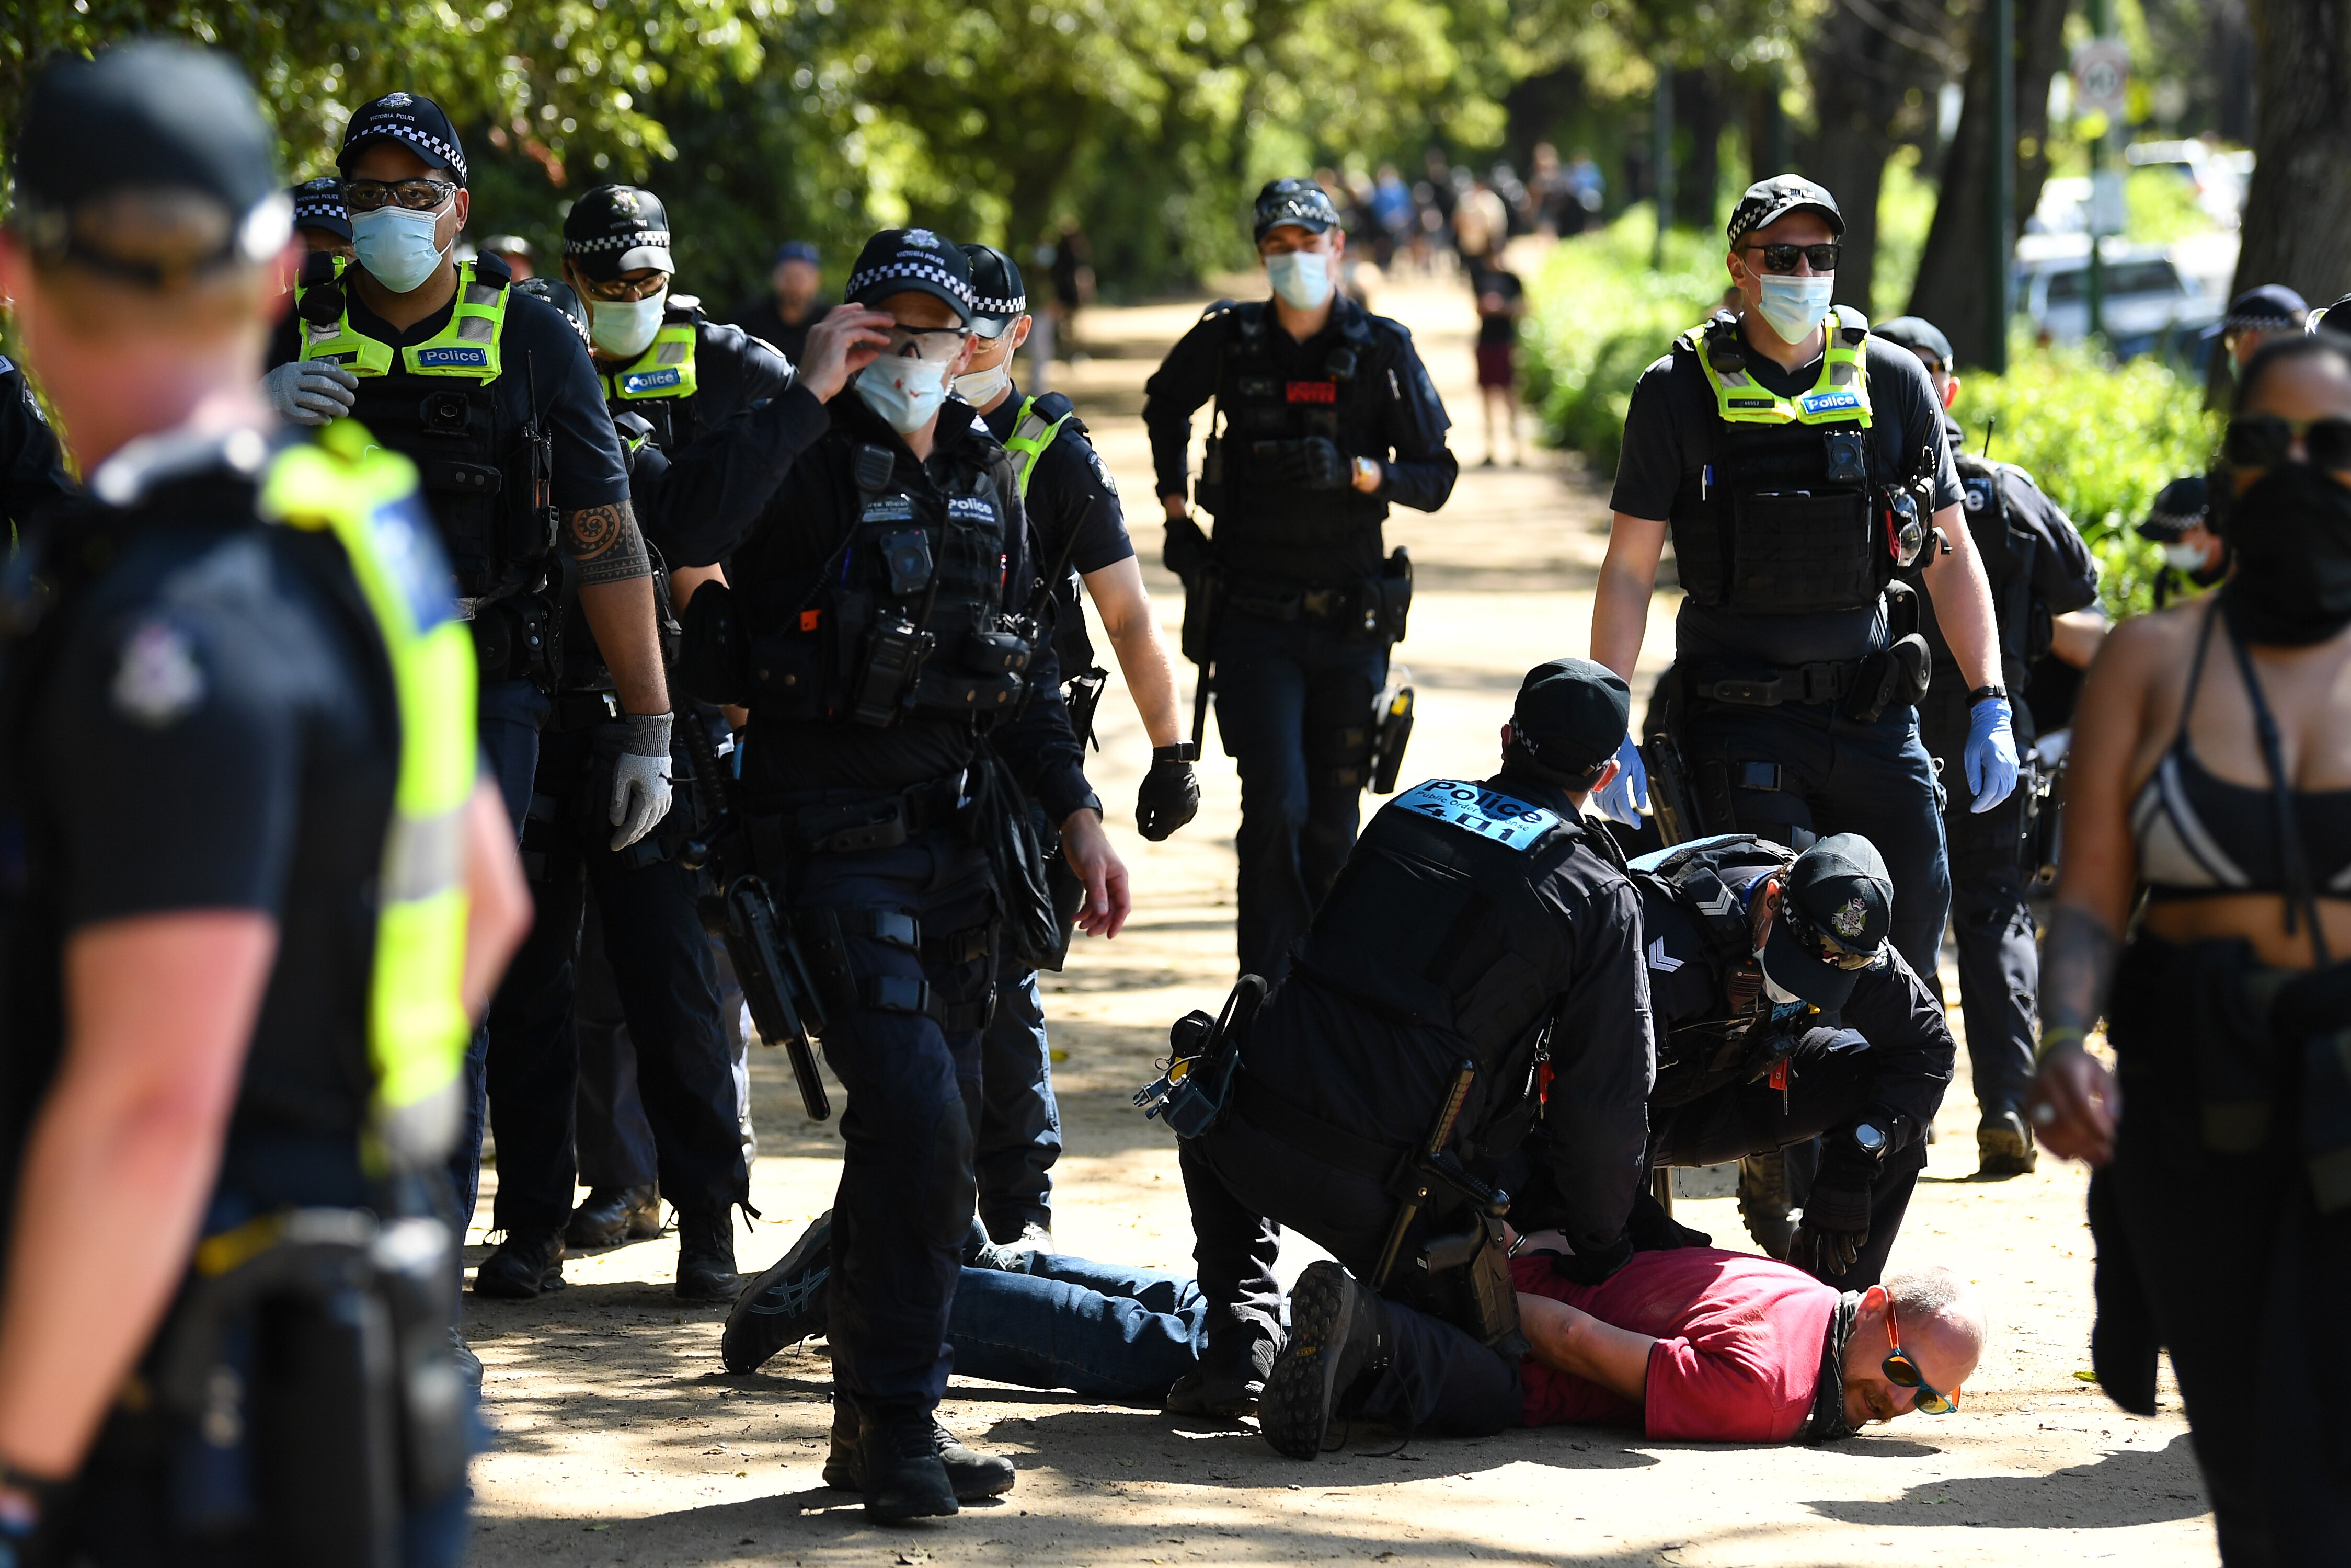 La police de Victoria arrête un manifestant près des jardins botaniques royaux lors d'une manifestation à Melbourne, le samedi 2 octobre 2021. (AAP Image/James Ross) PAS D'ARCHIVAGE